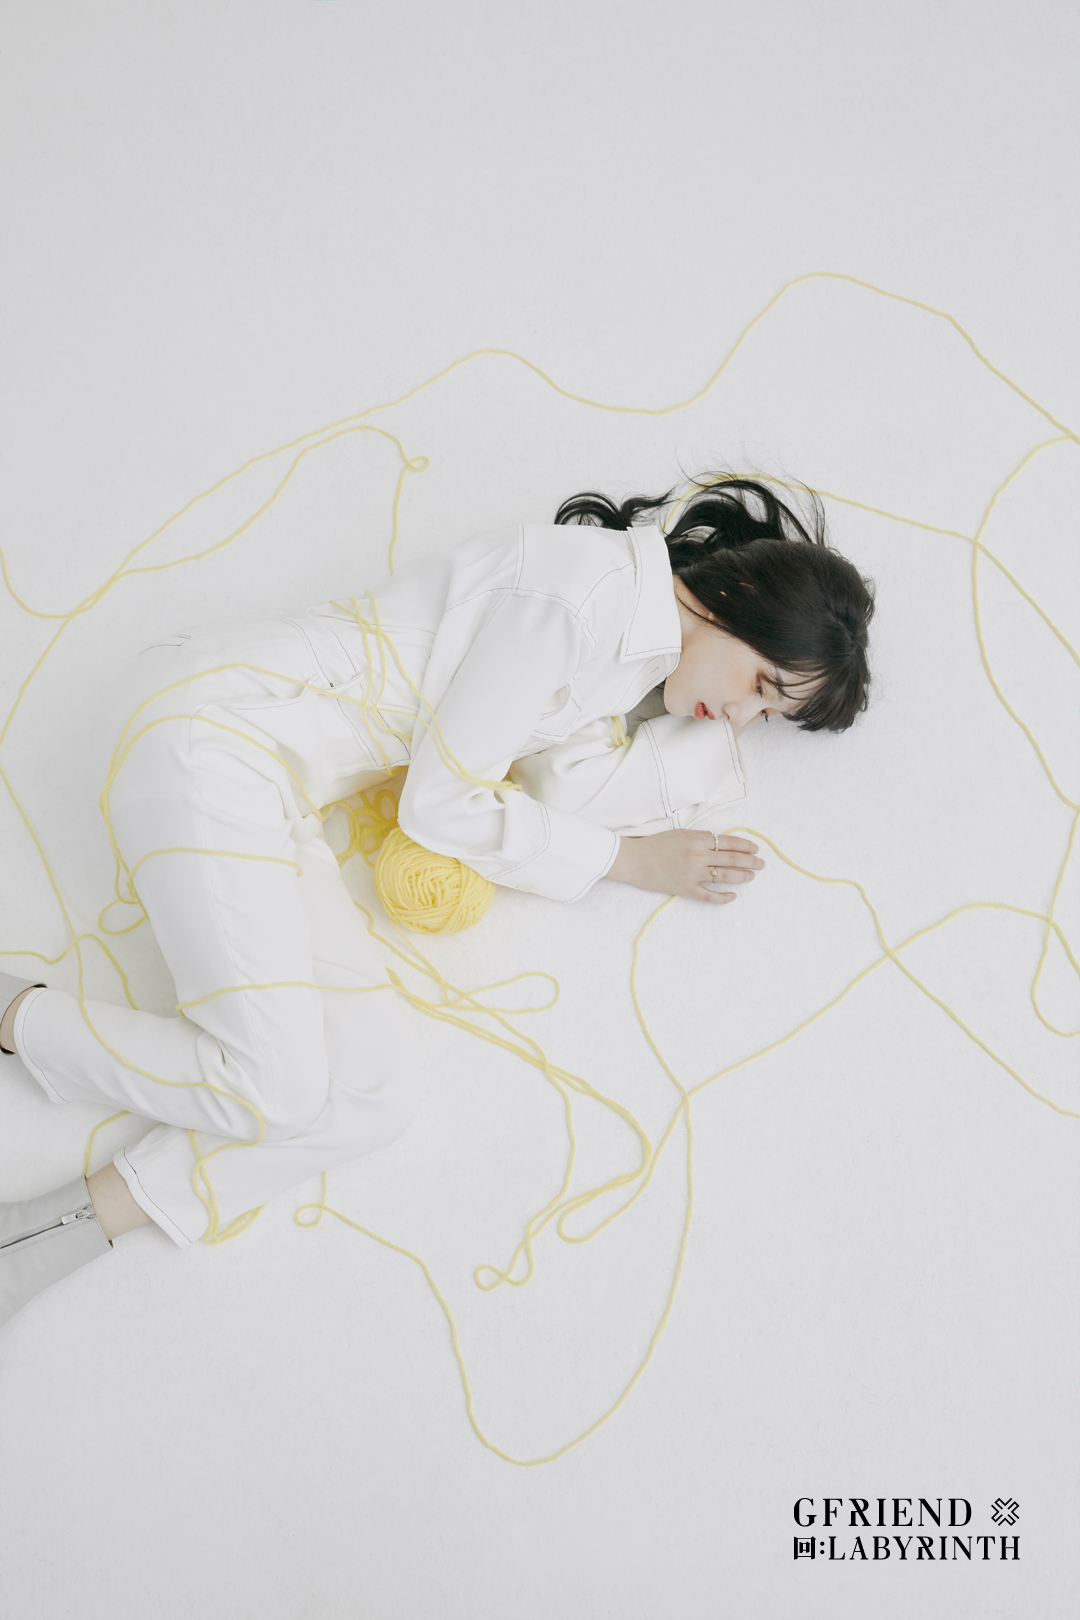 #여자친구 미니 앨범 '回:LABYRINTH' Concept Photo (Twisted ver.)